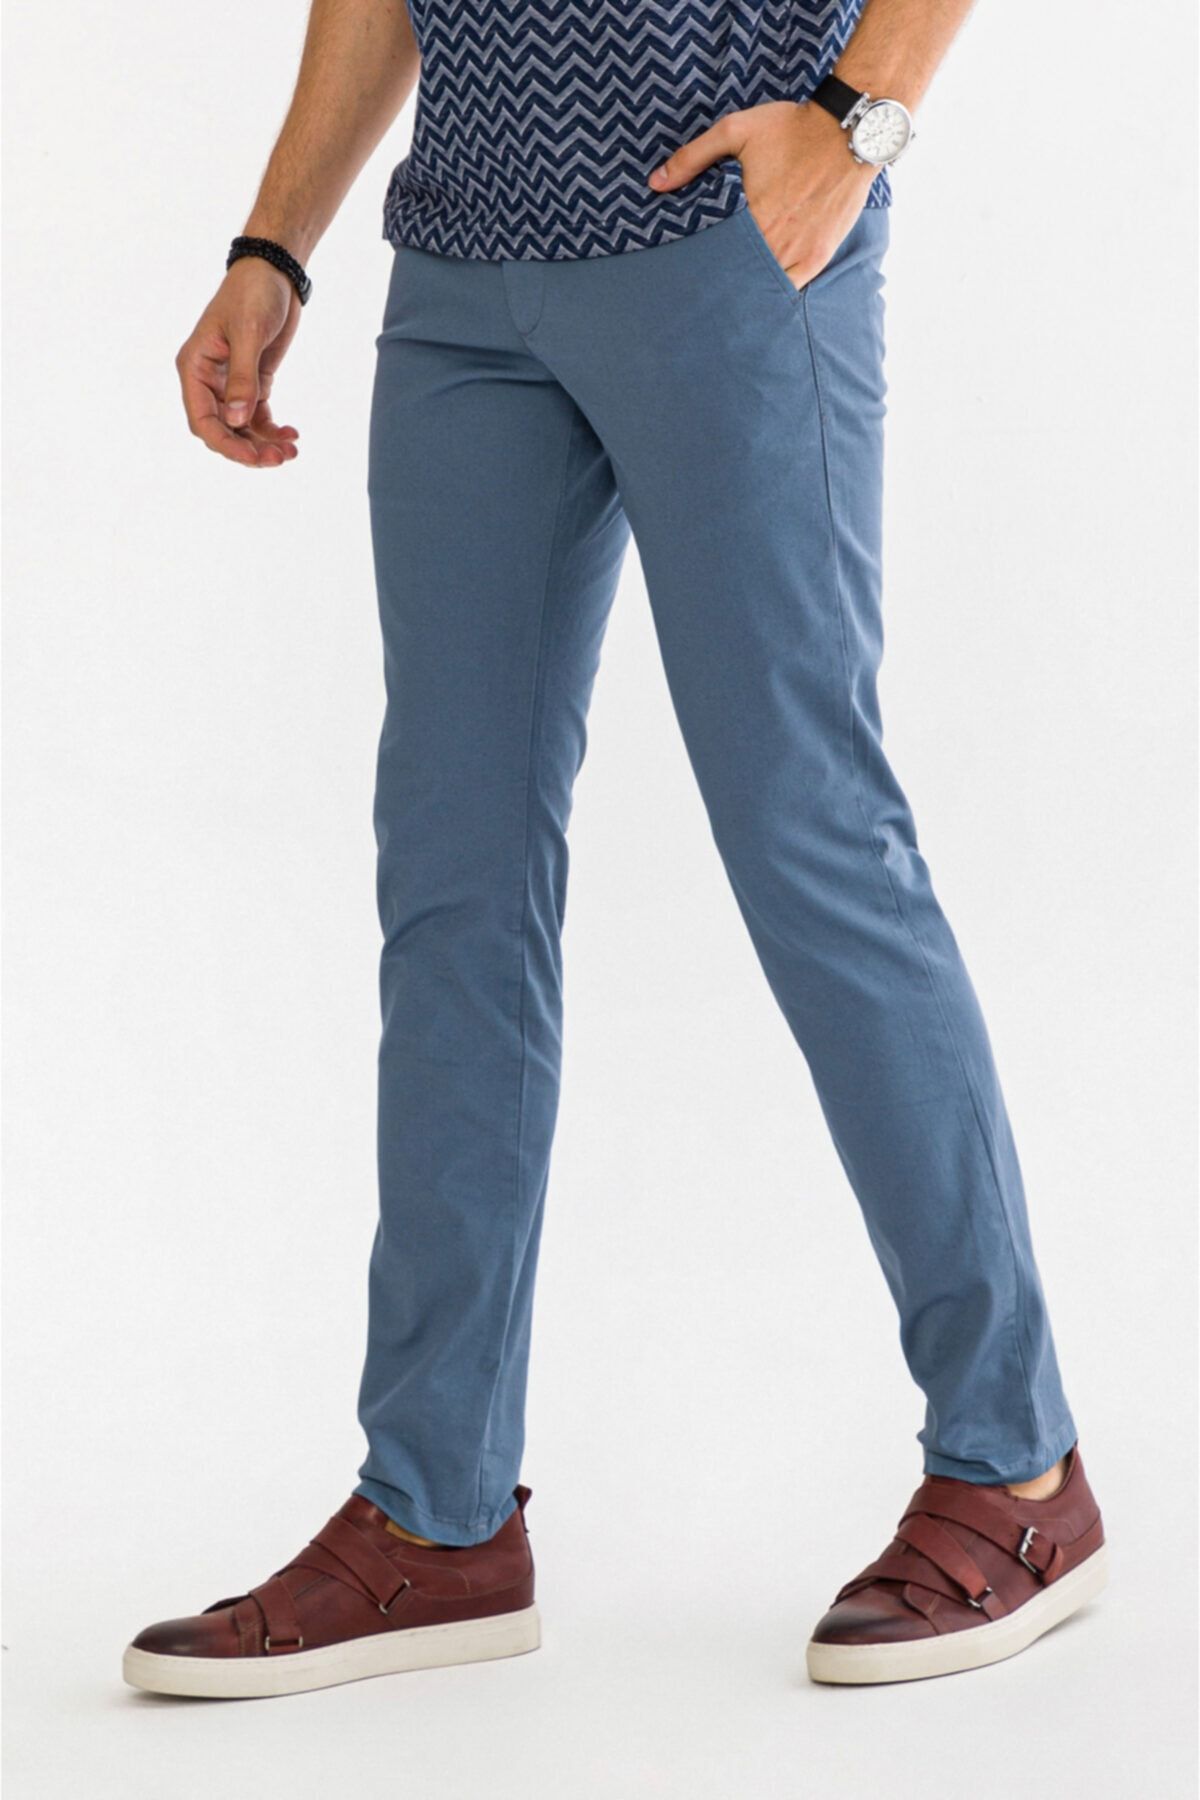 Erkek Açık Mavi Yandan Cepli Düz Slim Fit Pantolon A91b3556